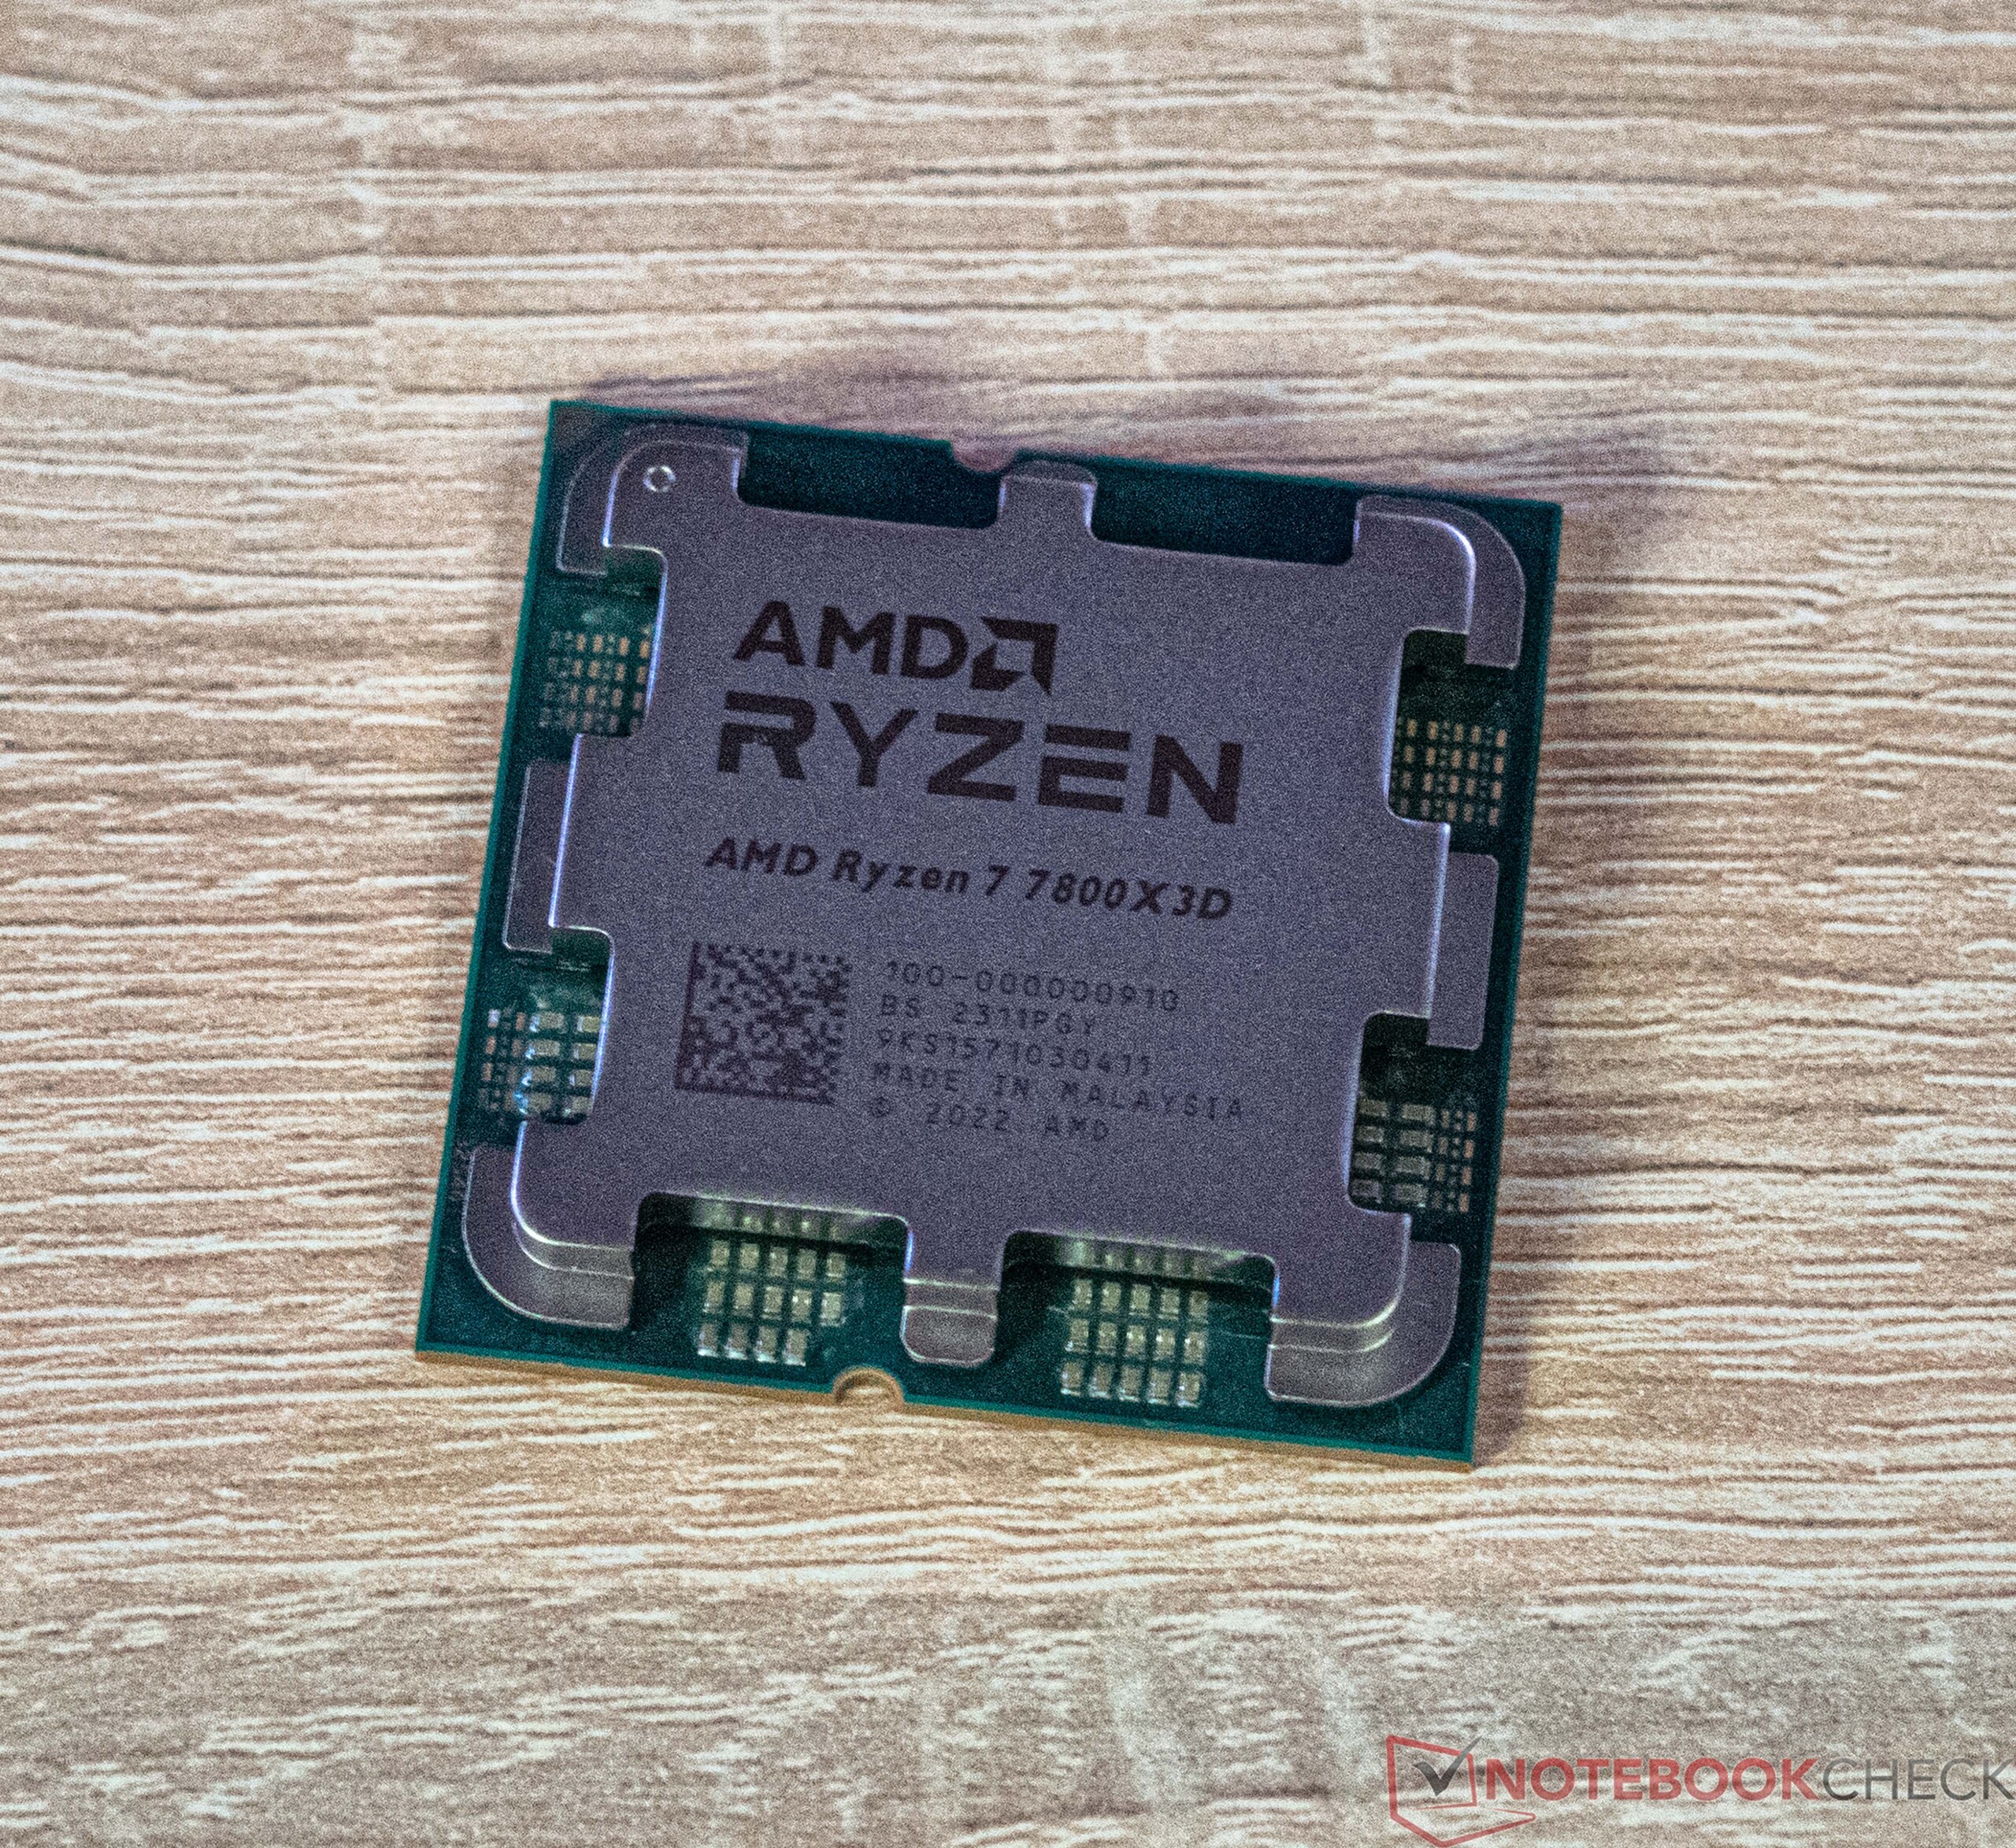 Test du Ryzen 7 7800X3D d'AMD, est-il le processeur des joueurs ? - GinjFo